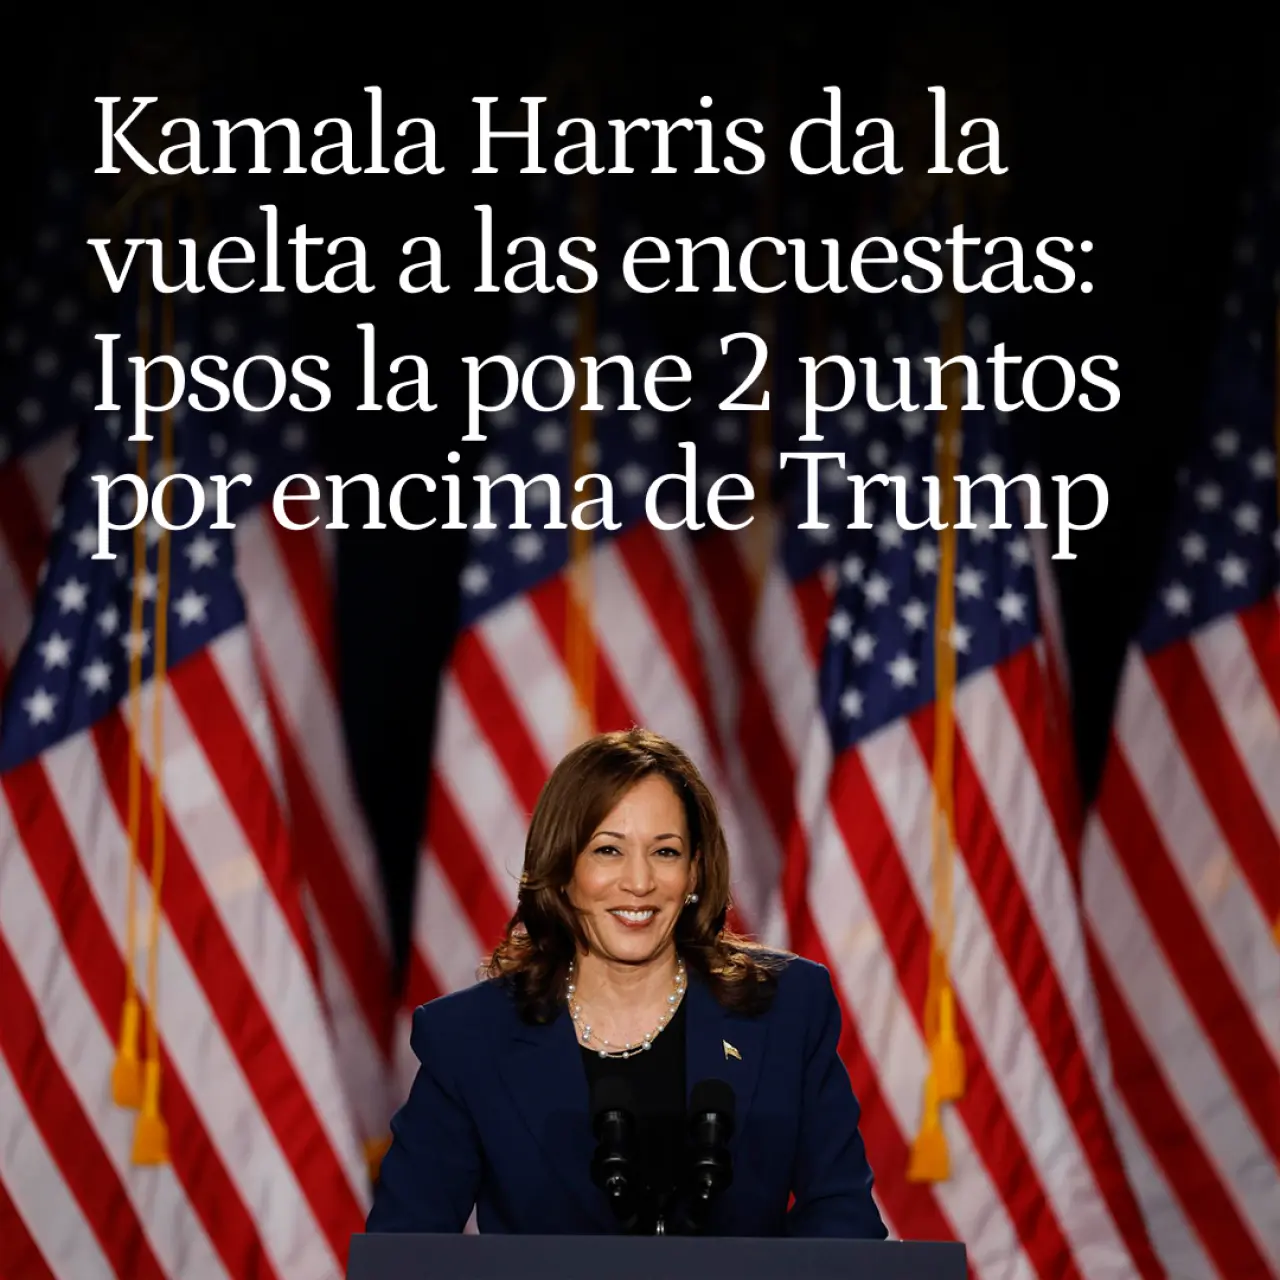 Kamala Harris da la vuelta a las encuestas: el sondeo de Ipsos la sitúa 2 puntos por encima de Trump